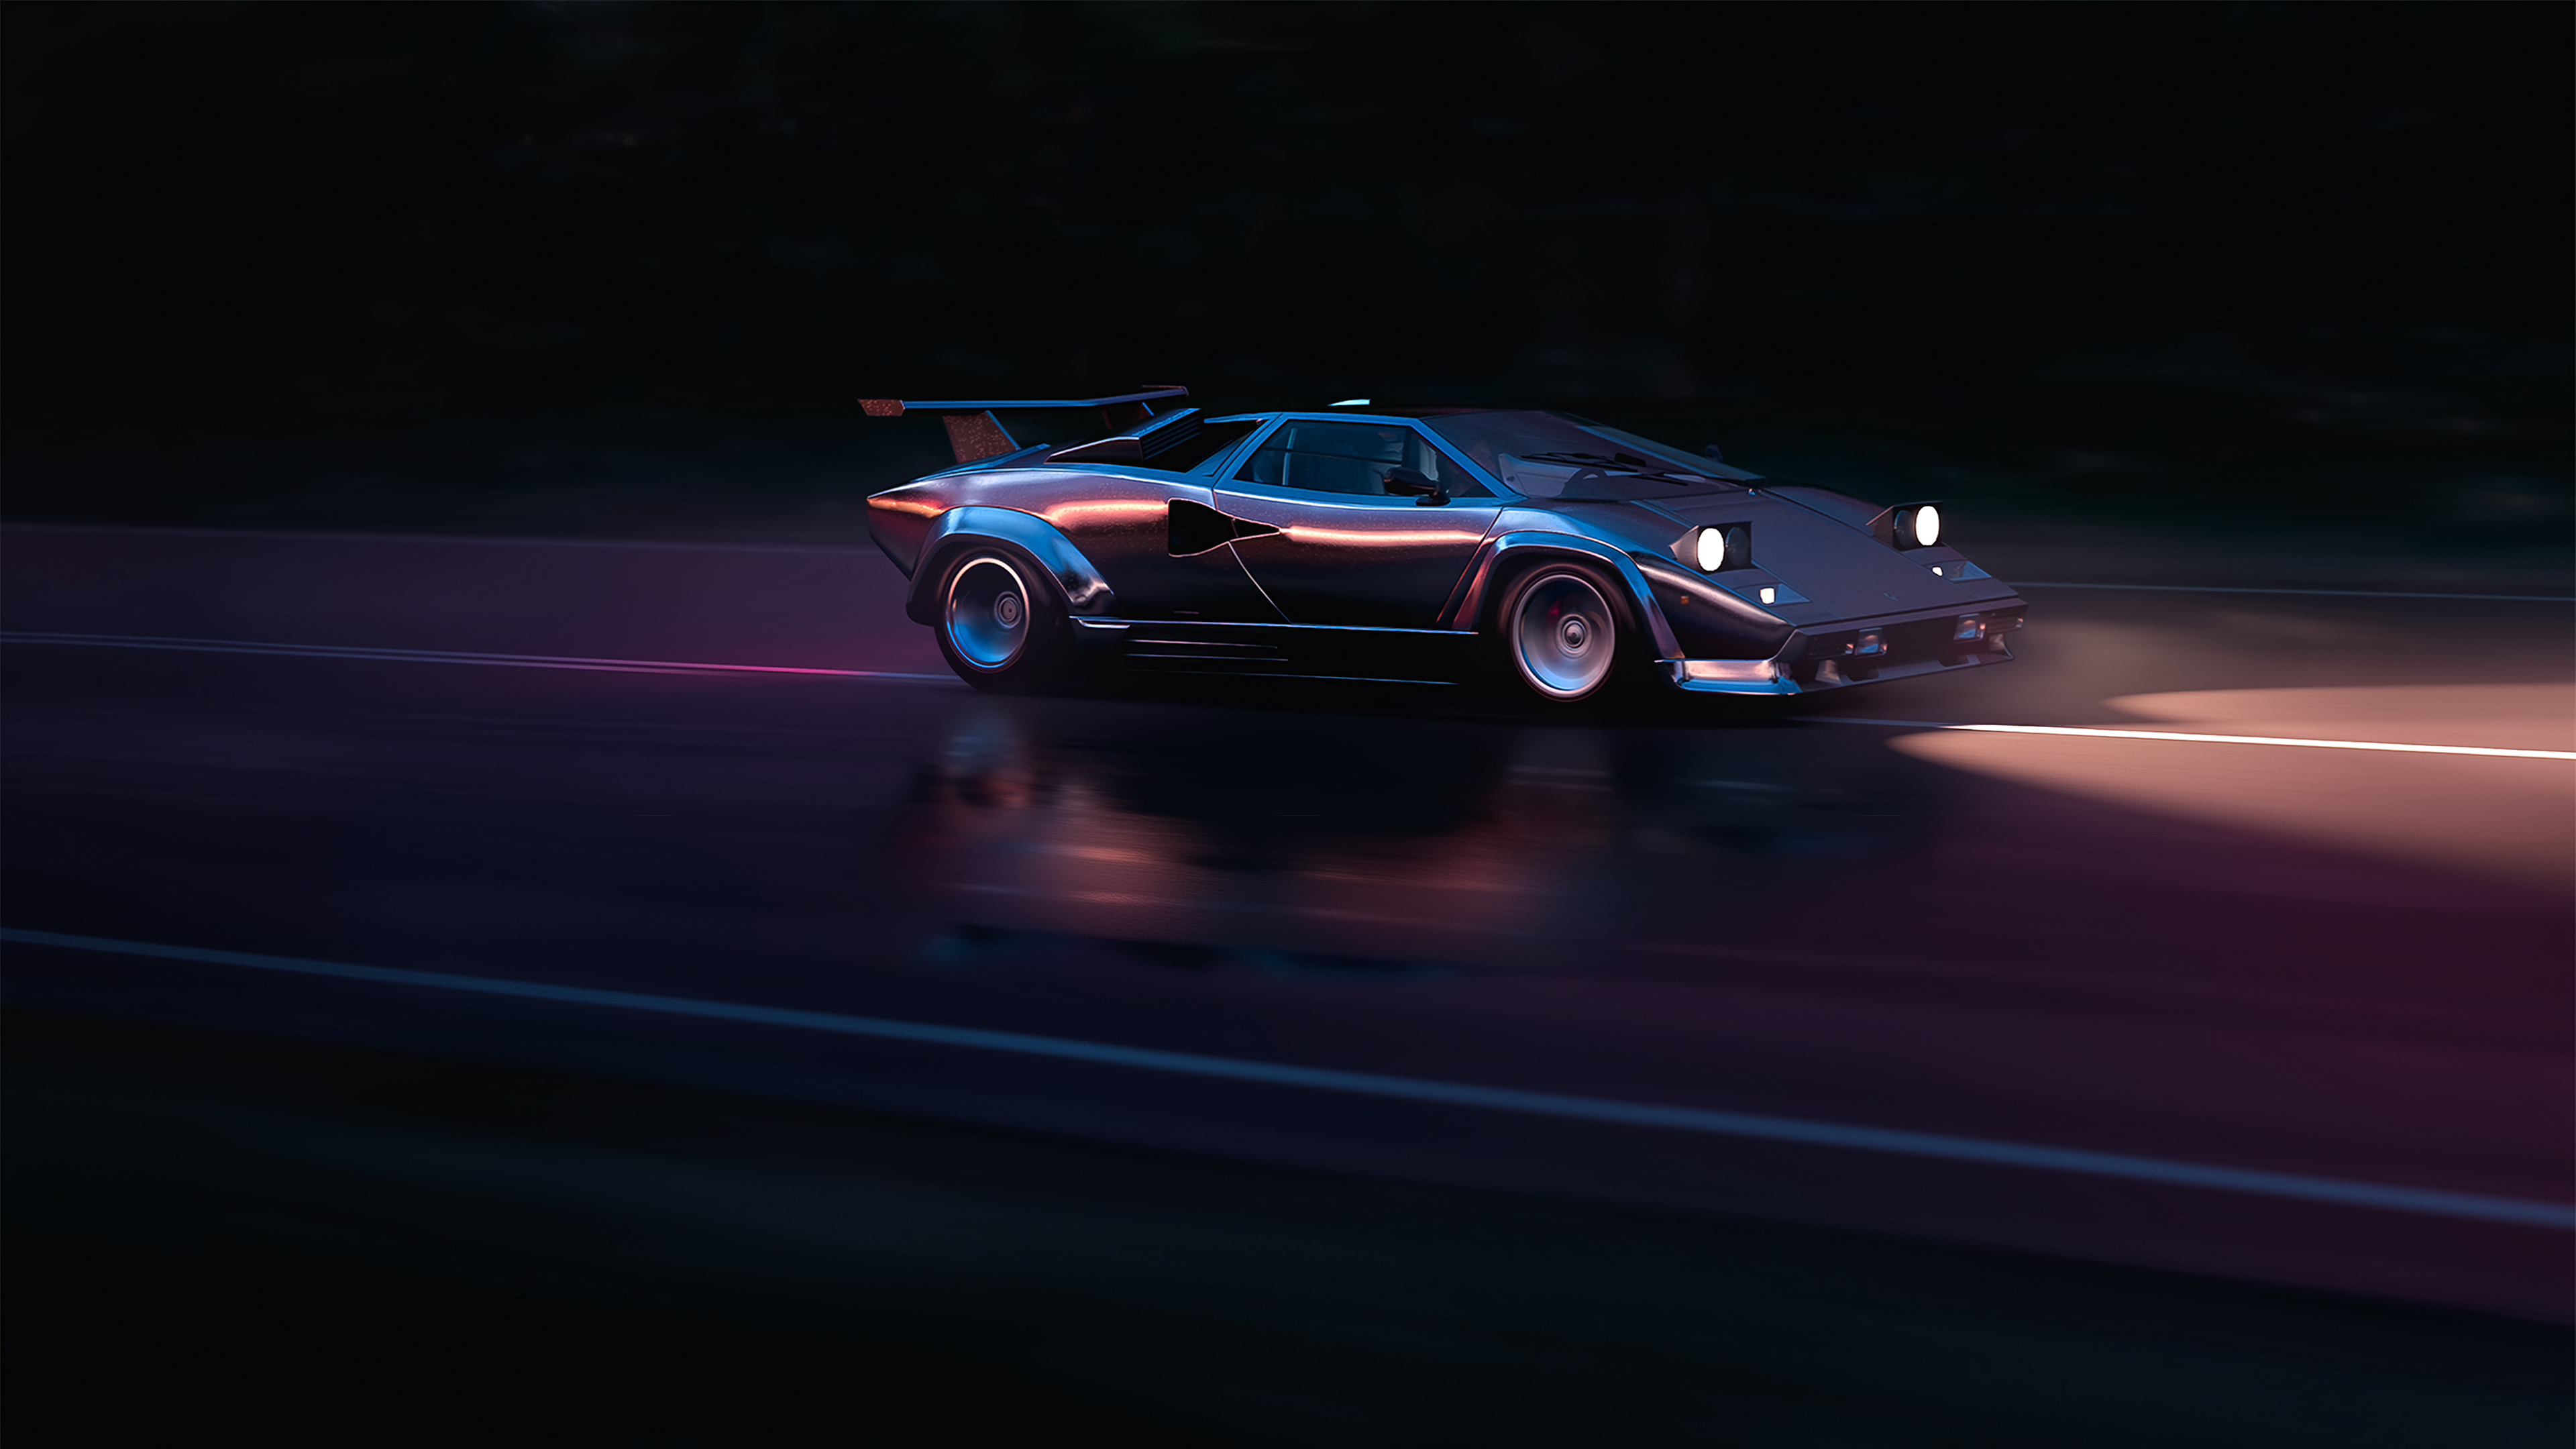 Siêu xe Lamborghini – biểu tượng của tốc độ và sức mạnh cao cấp – sẽ khiến bạn phải trầm trồ kinh ngạc. Thư giãn và ngắm nhìn đôi mắt của bạn sẽ được thỏa mãn qua từng hình ảnh đẹp như tranh vẽ.